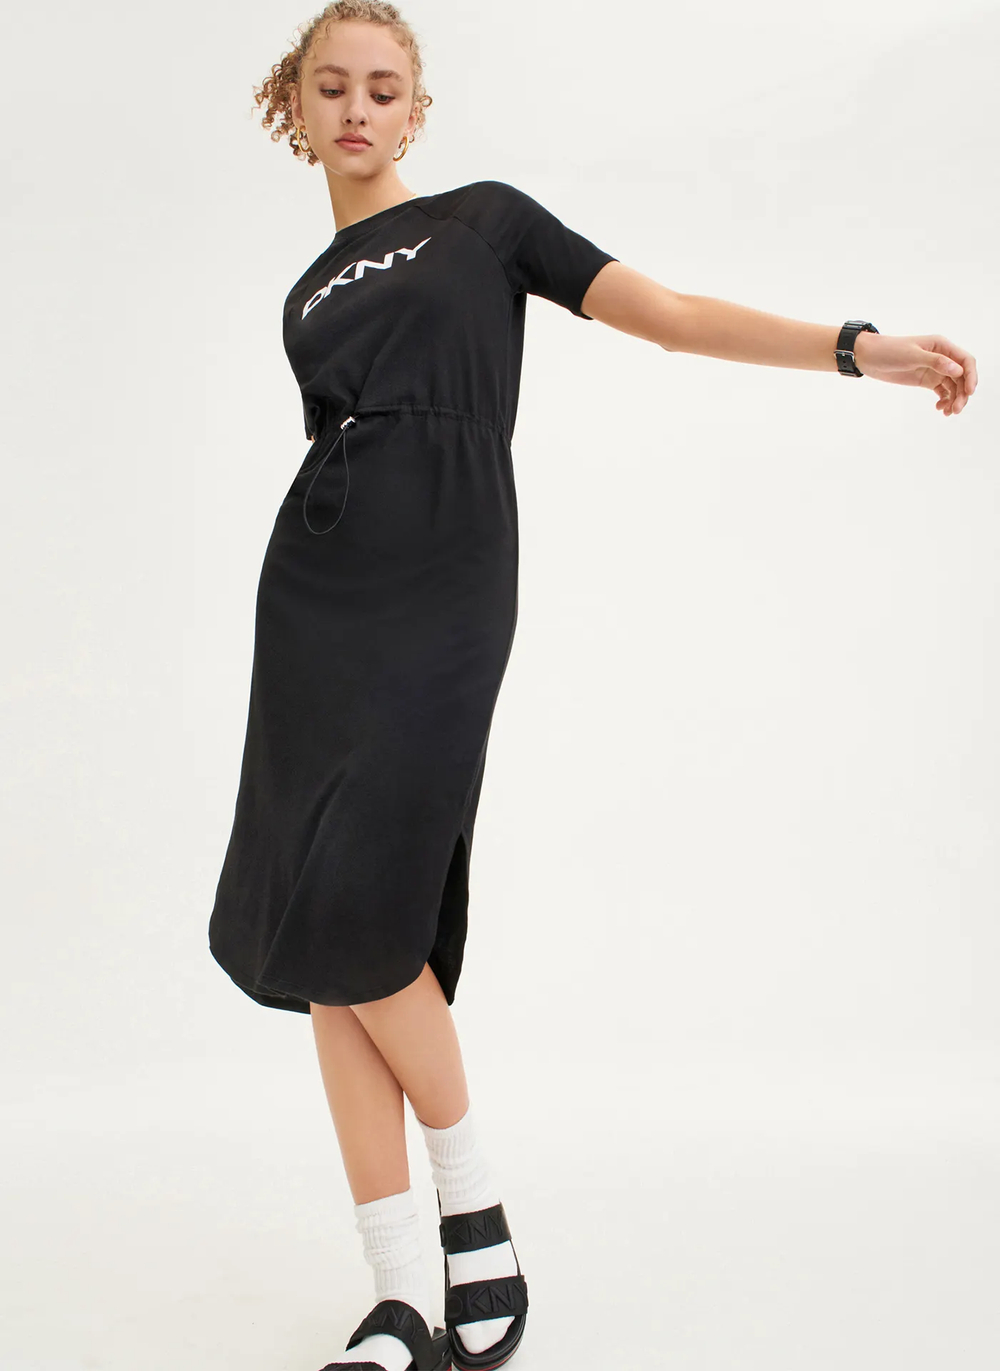 Женское платье DKNY Logo Drawstring Waist